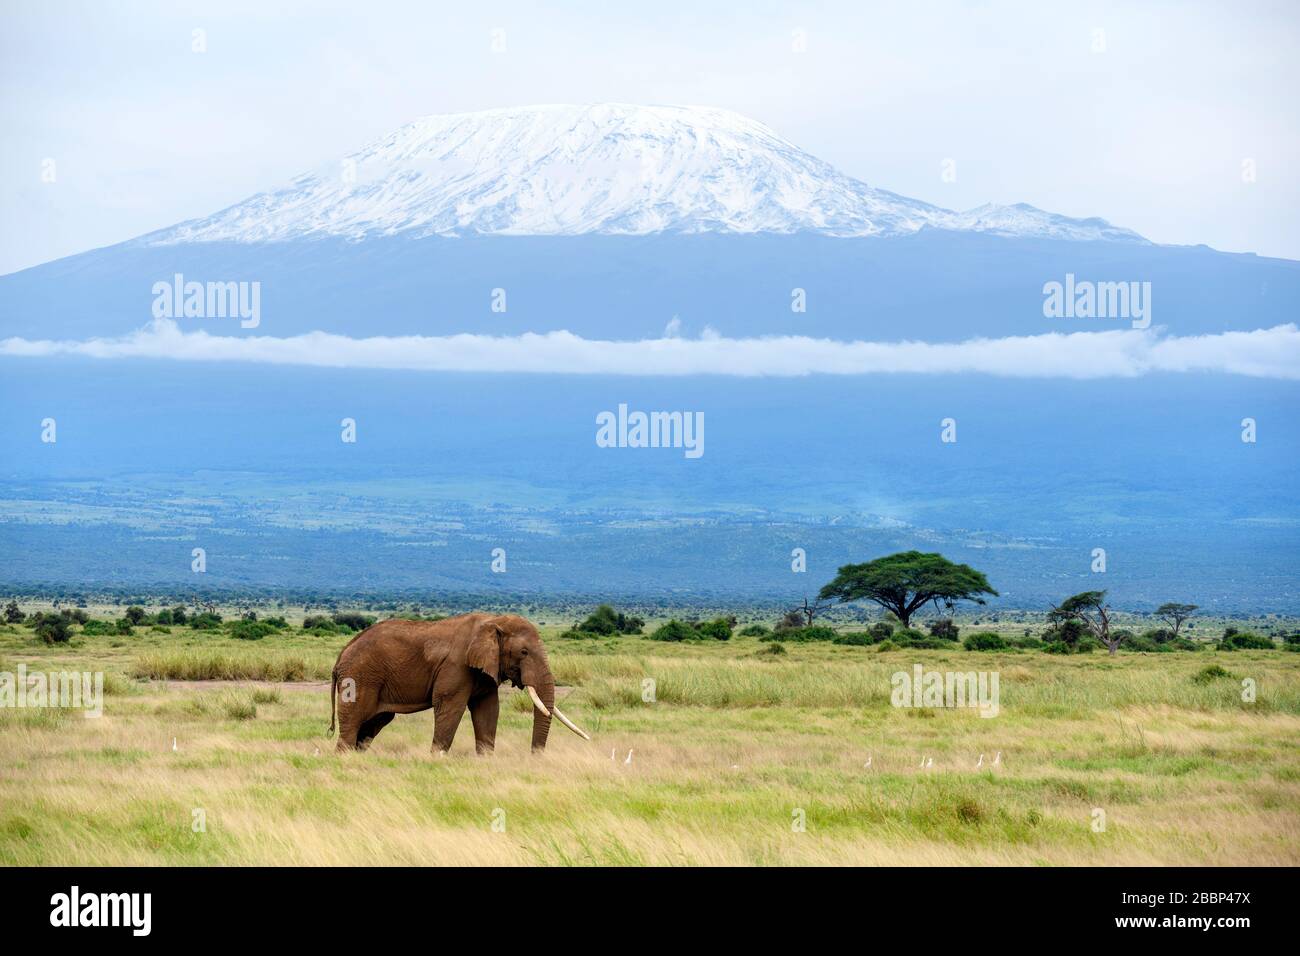 African bush elephant (Loxodonta africana) with Mount Kilimanjaro behind, Amboseli National Park, Kenya, Africa Stock Photo